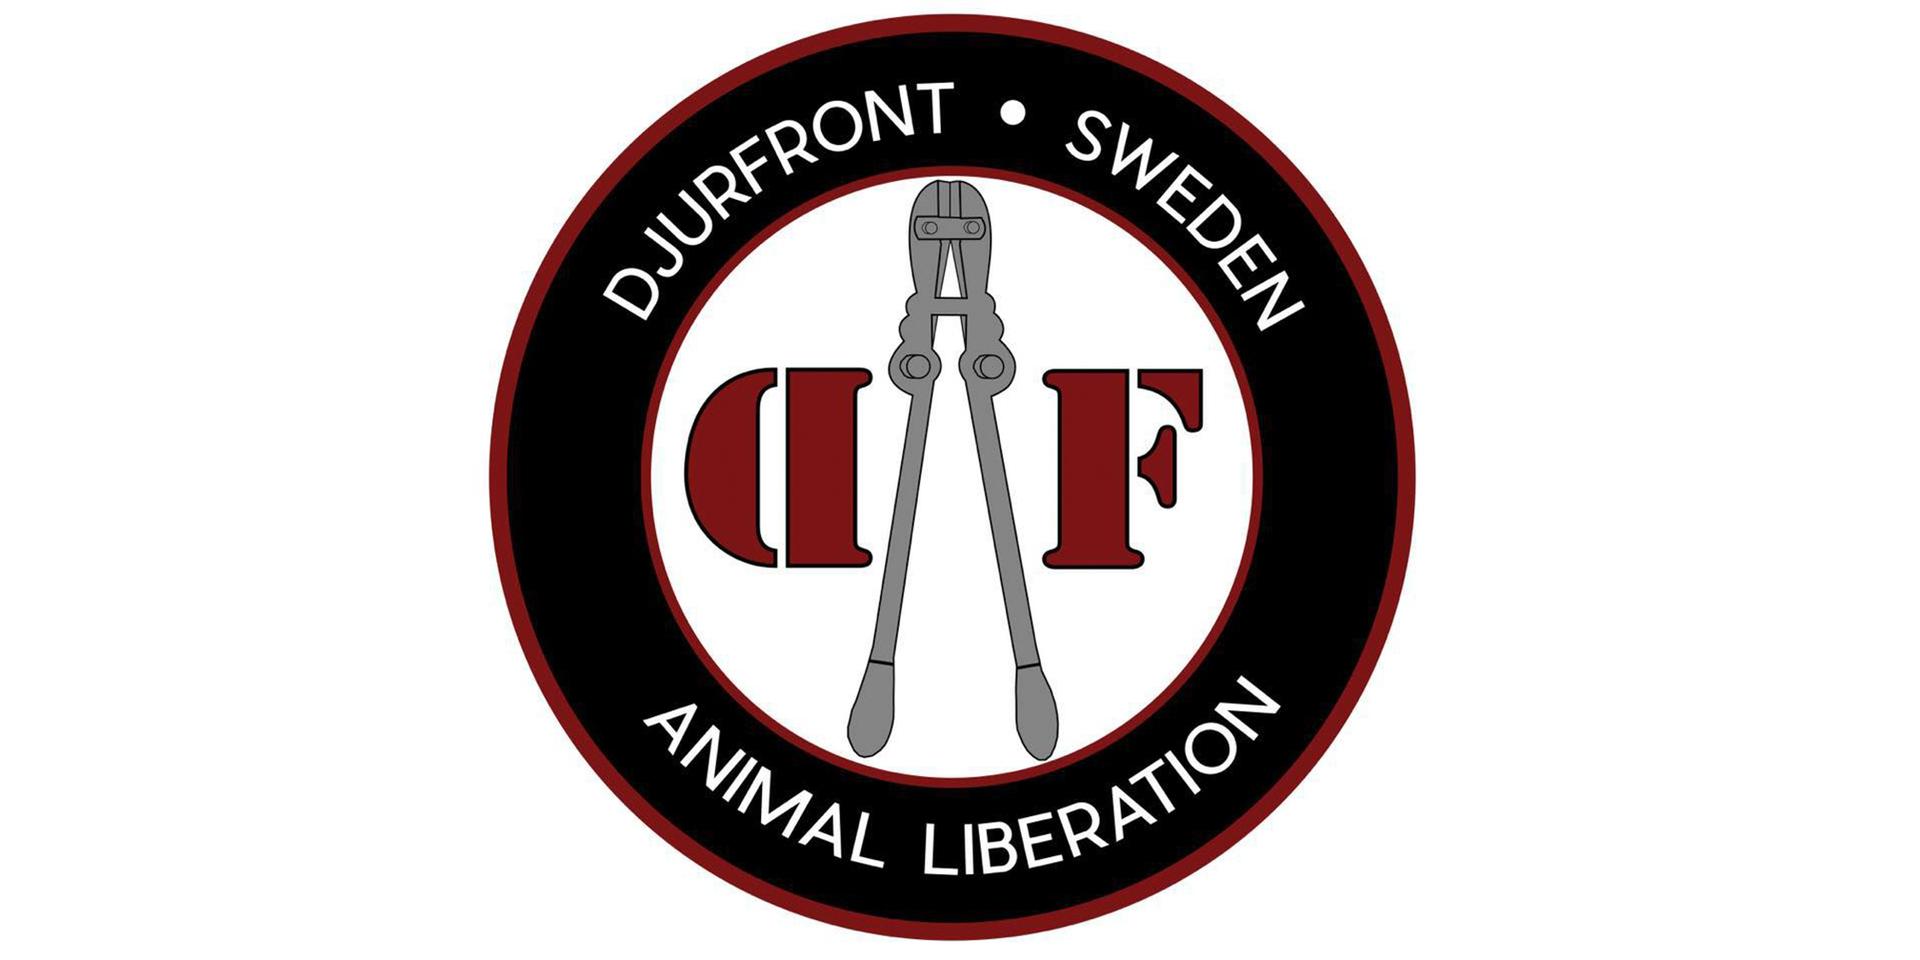 Djurfront säger sig ha lokalavdelningar i flera svenska städer. GP:s granskning visar dock att det rör sig om drygt 100 aktiva medlemmar som är aktiva runt om i Sverige.